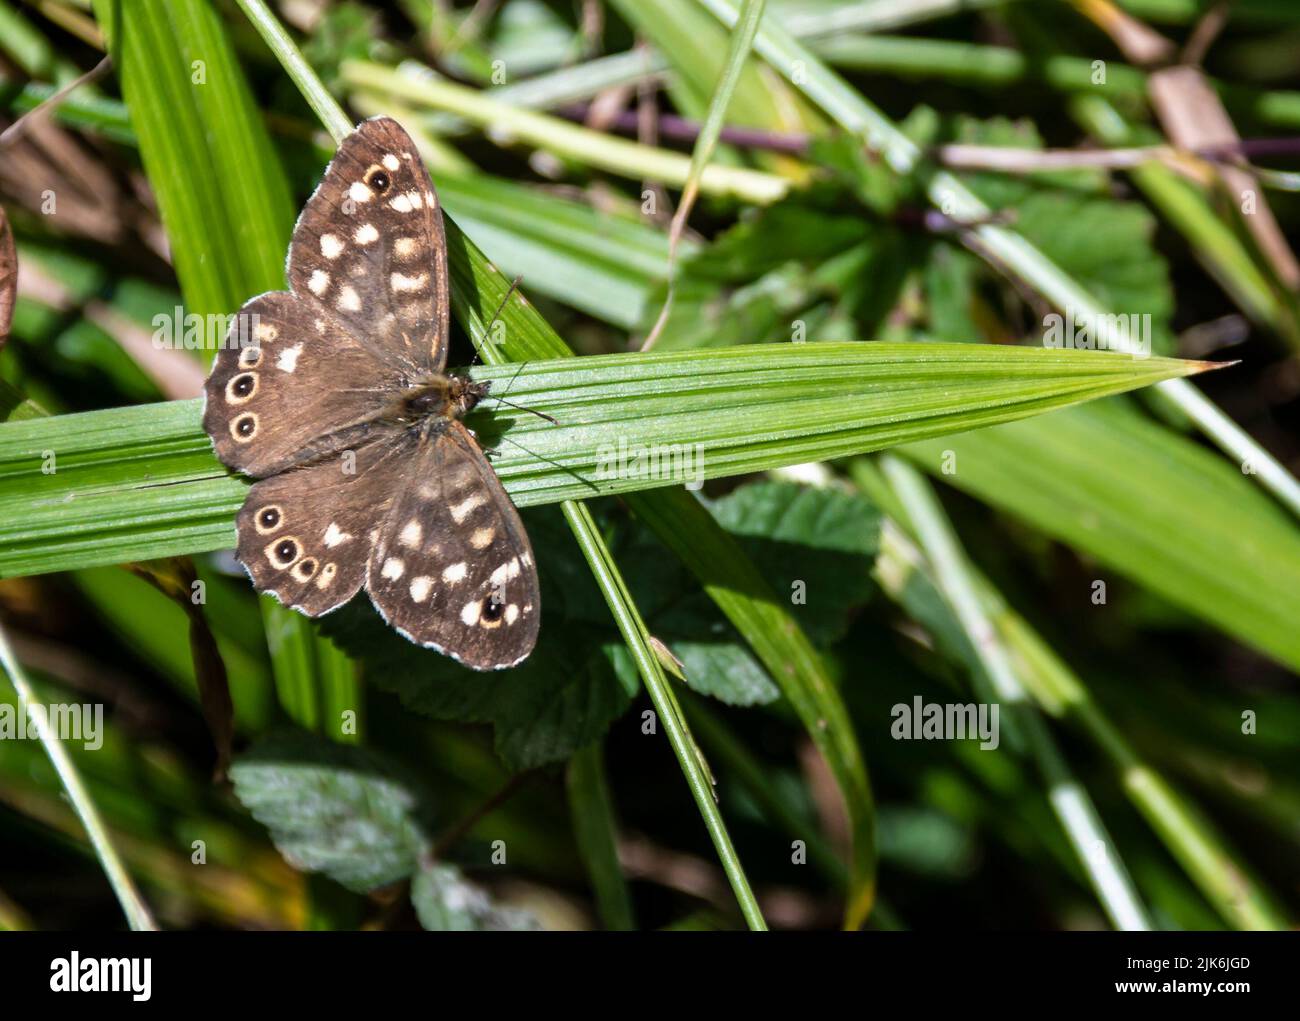 Una mariposa de madera moteada se sentó en una hoja ancha de hierba Foto de stock